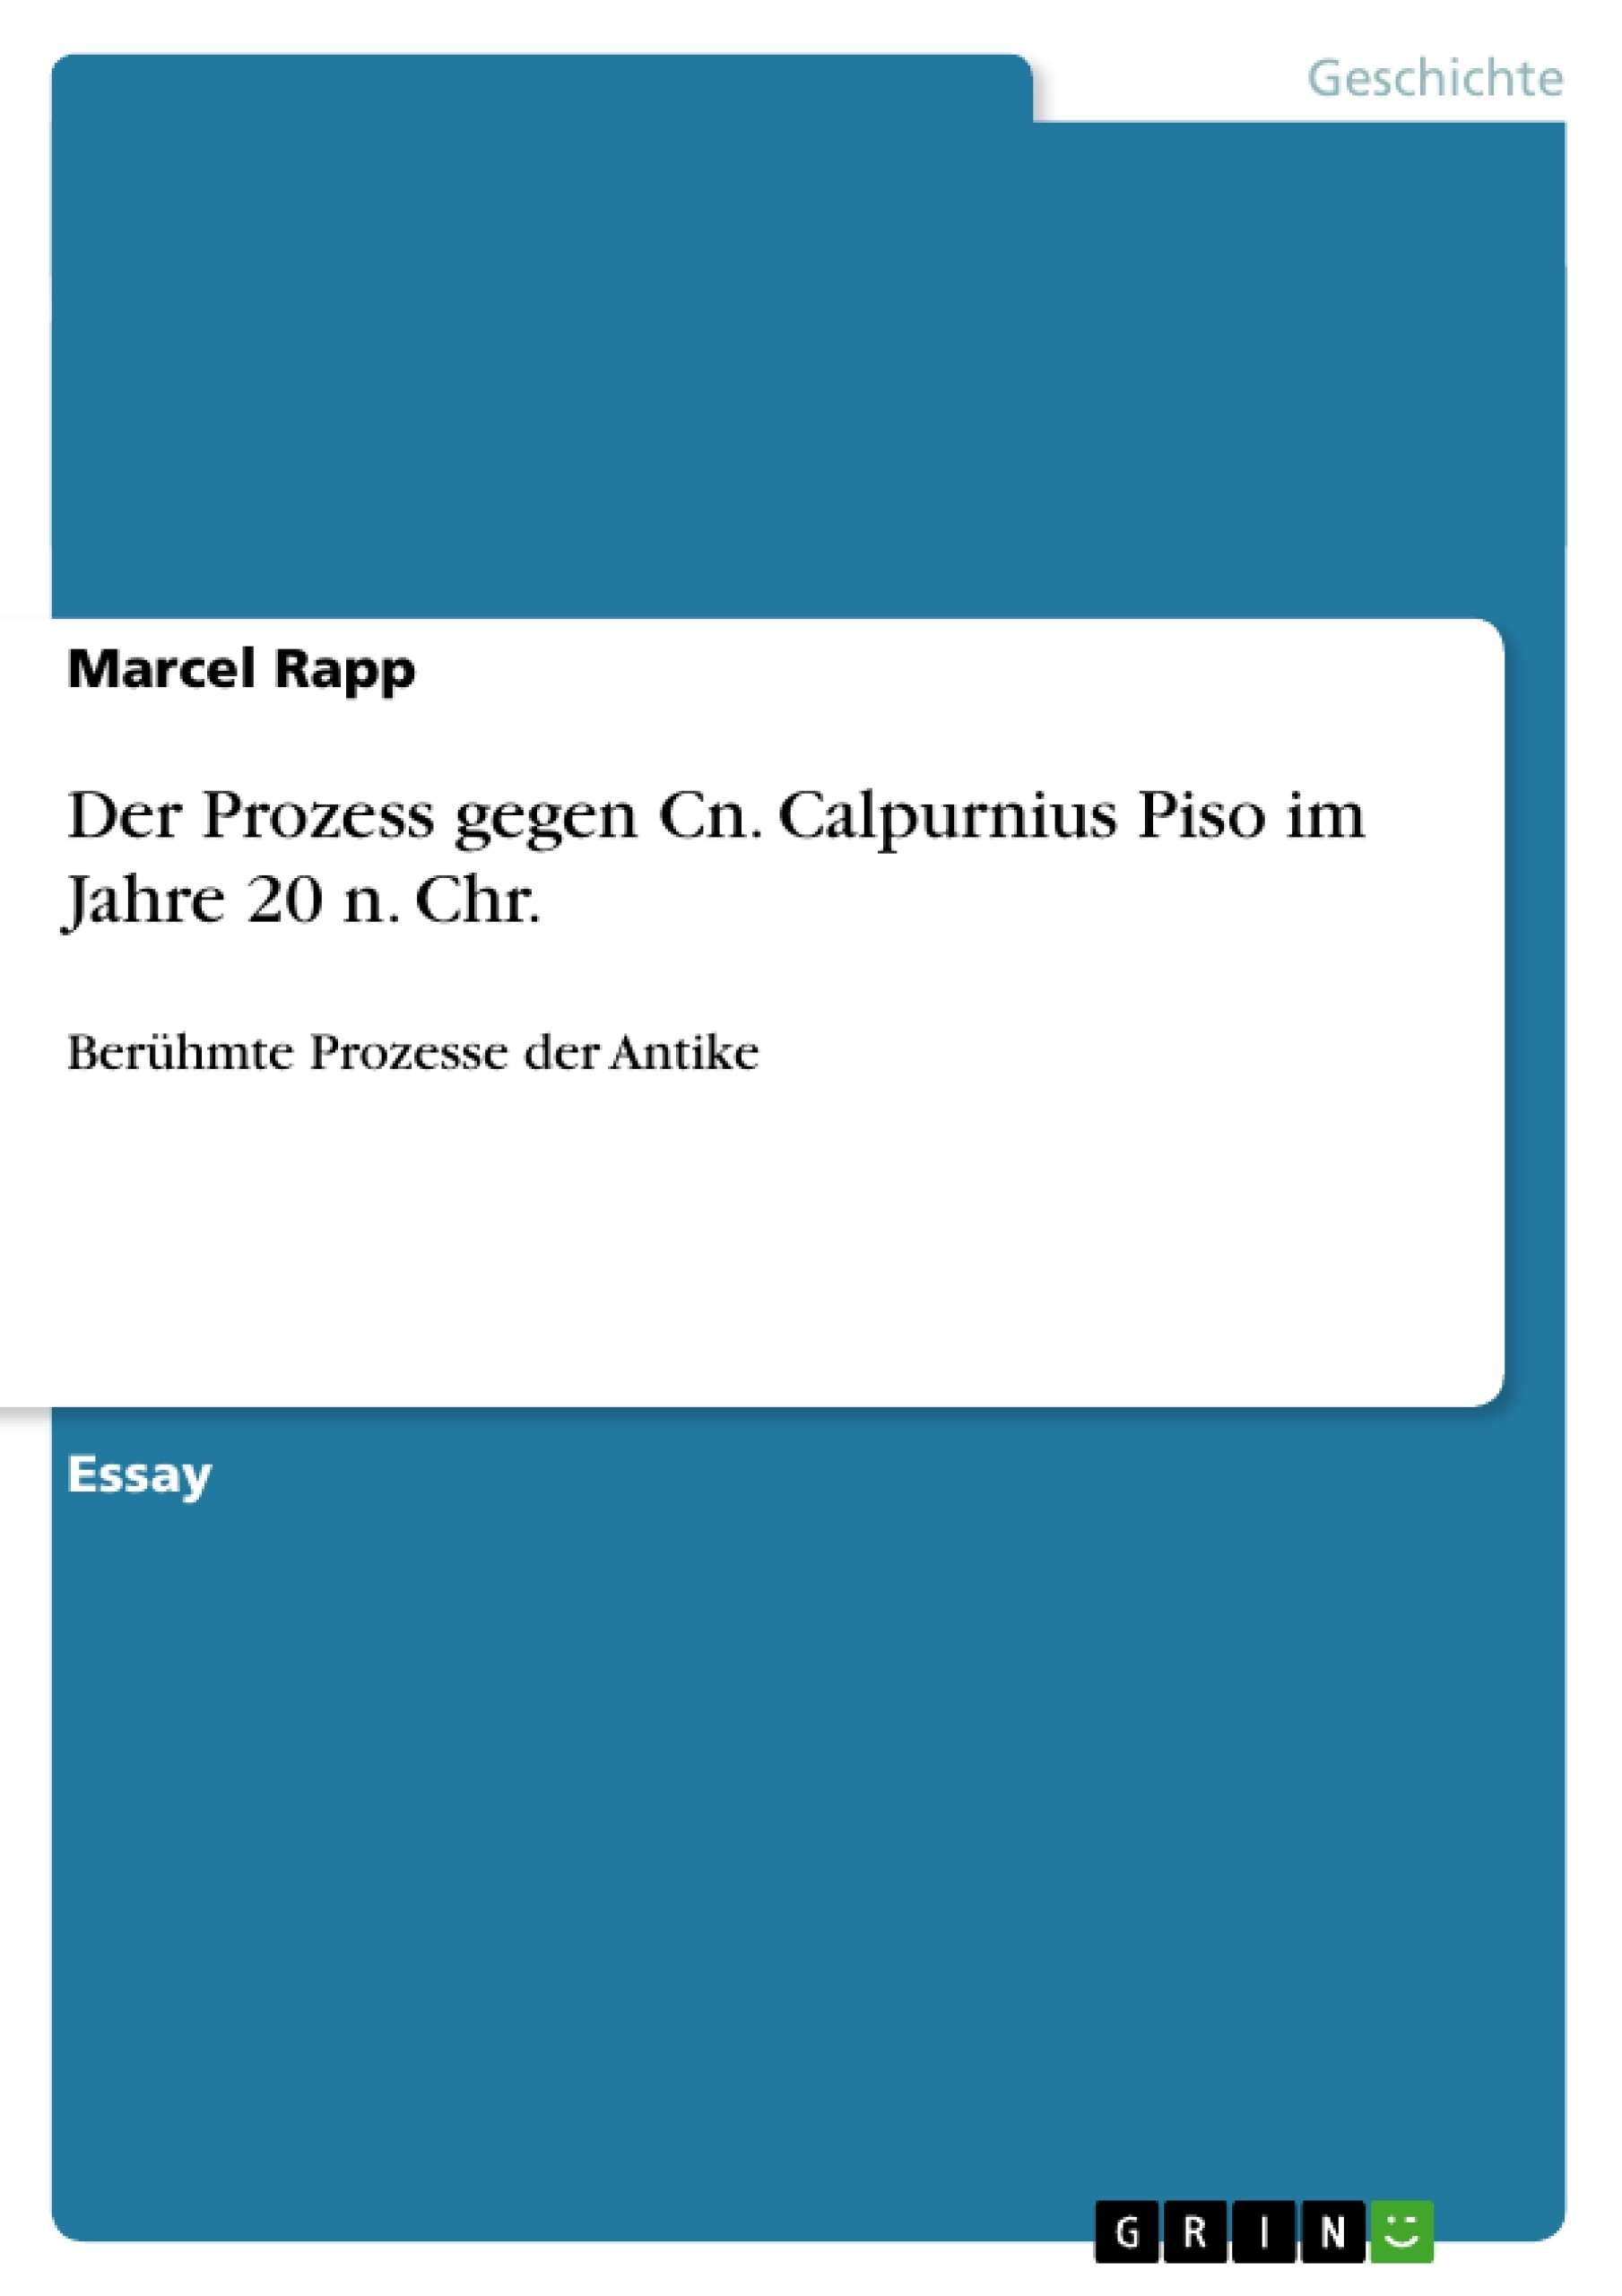 Titre: Der Prozess gegen Cn. Calpurnius Piso im Jahre 20 n. Chr.